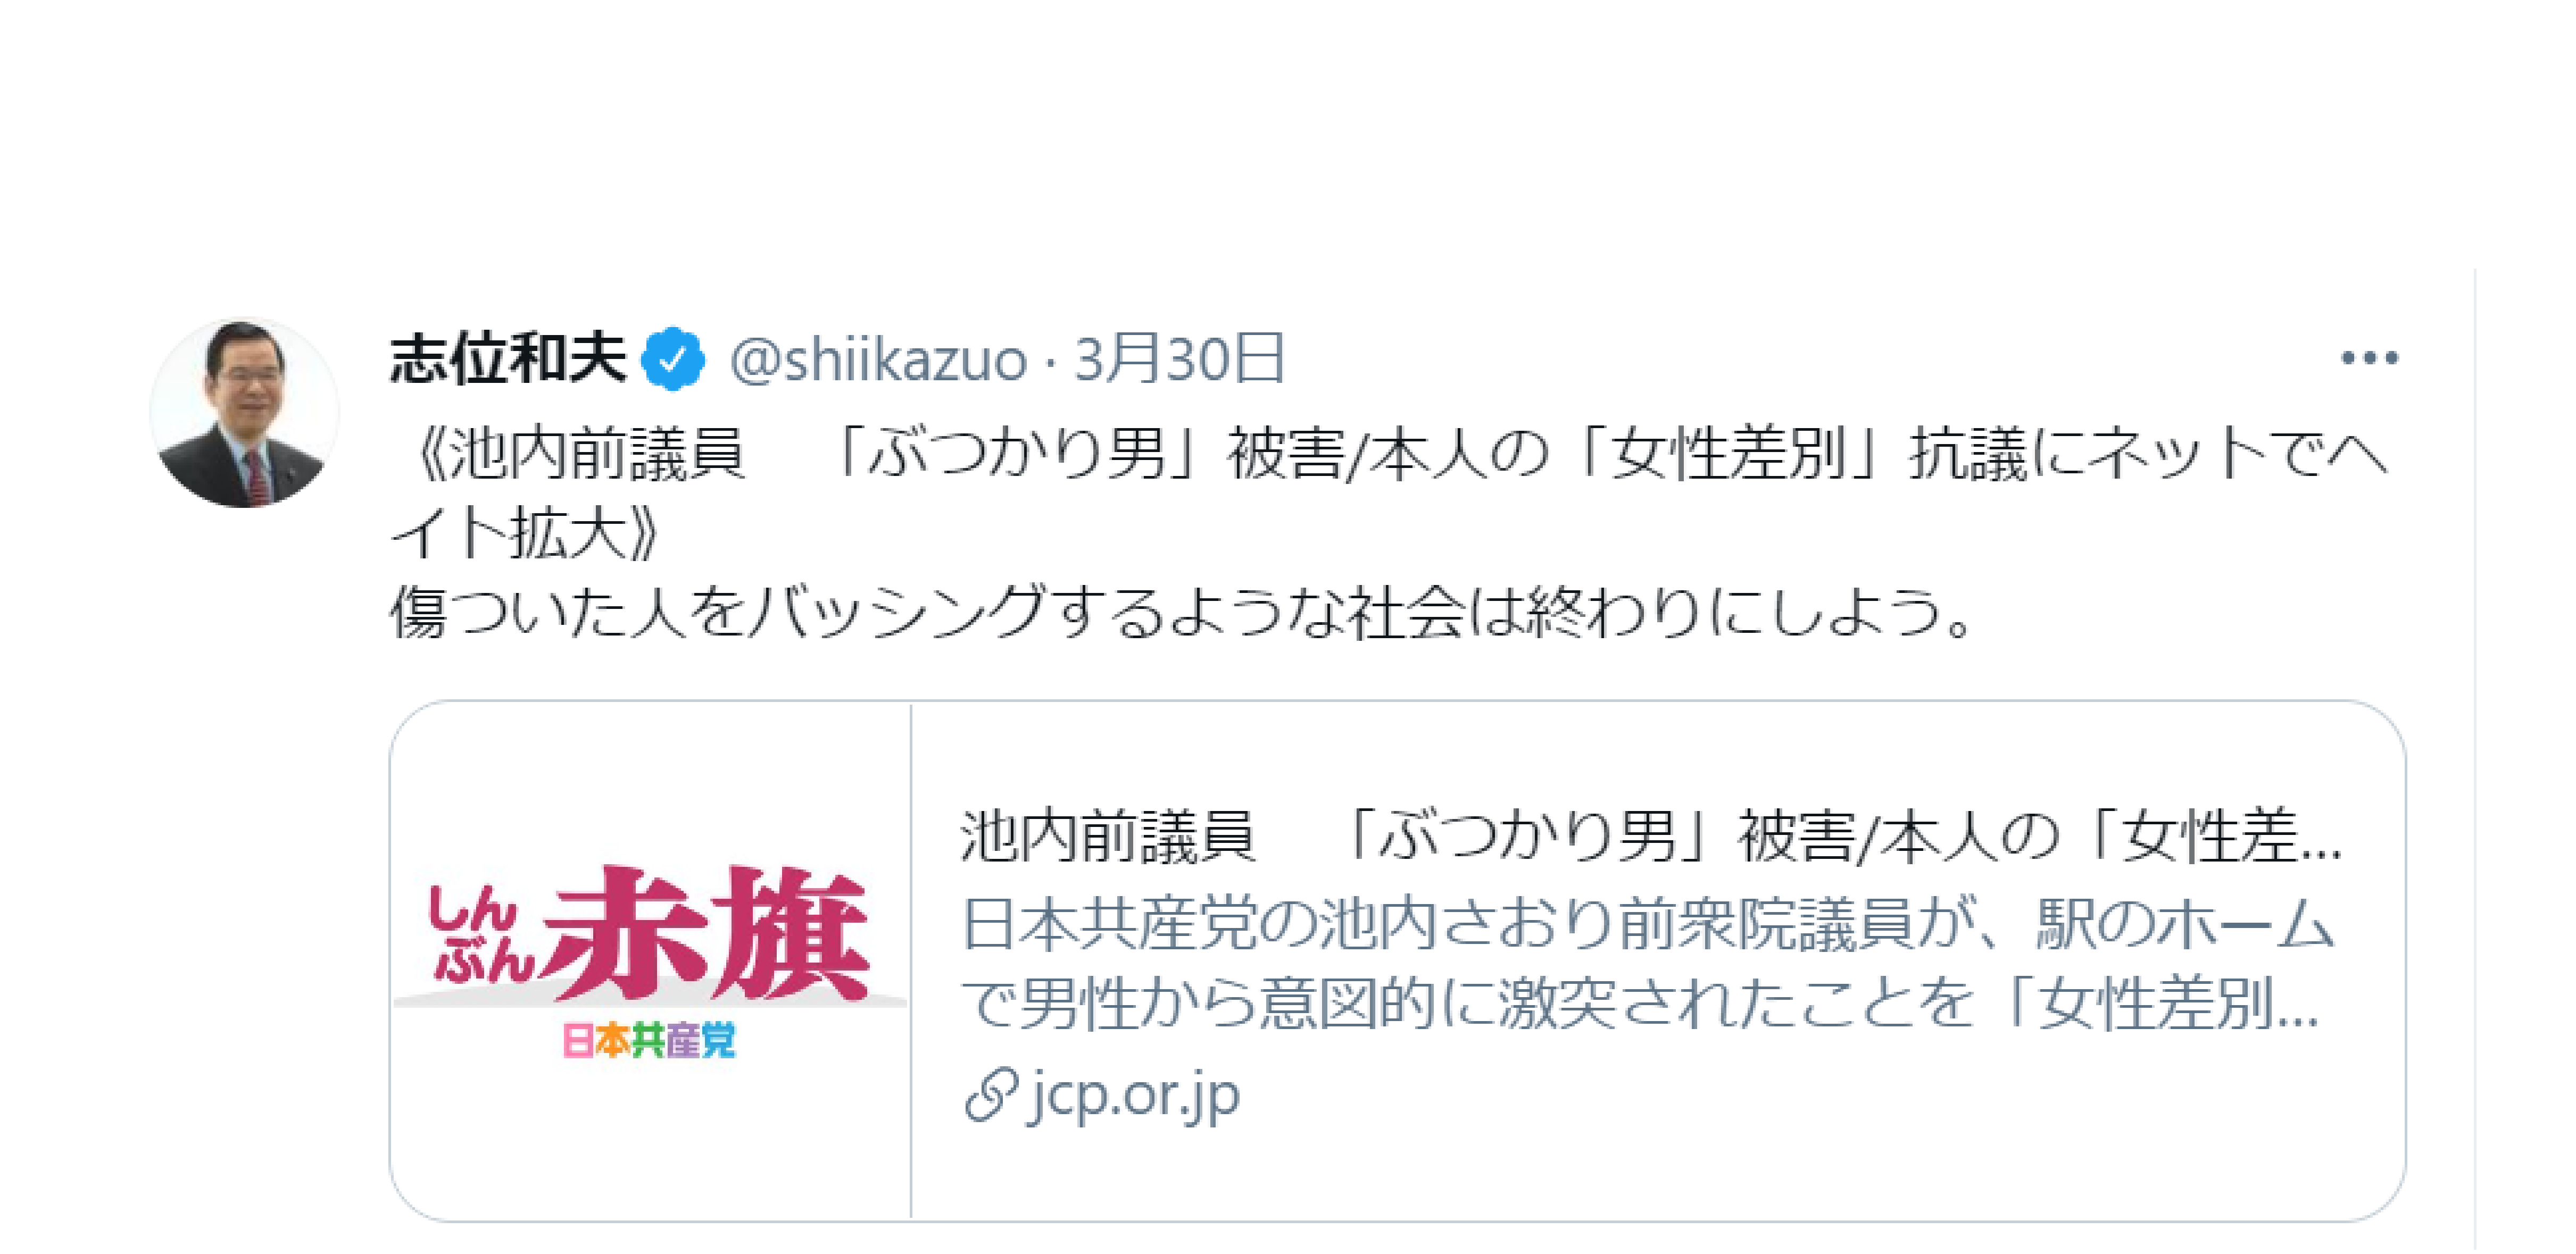 池内さおり前議員のTwitter「炎上」騒動、志位和夫委員長ら日本共産党が全力で擁護